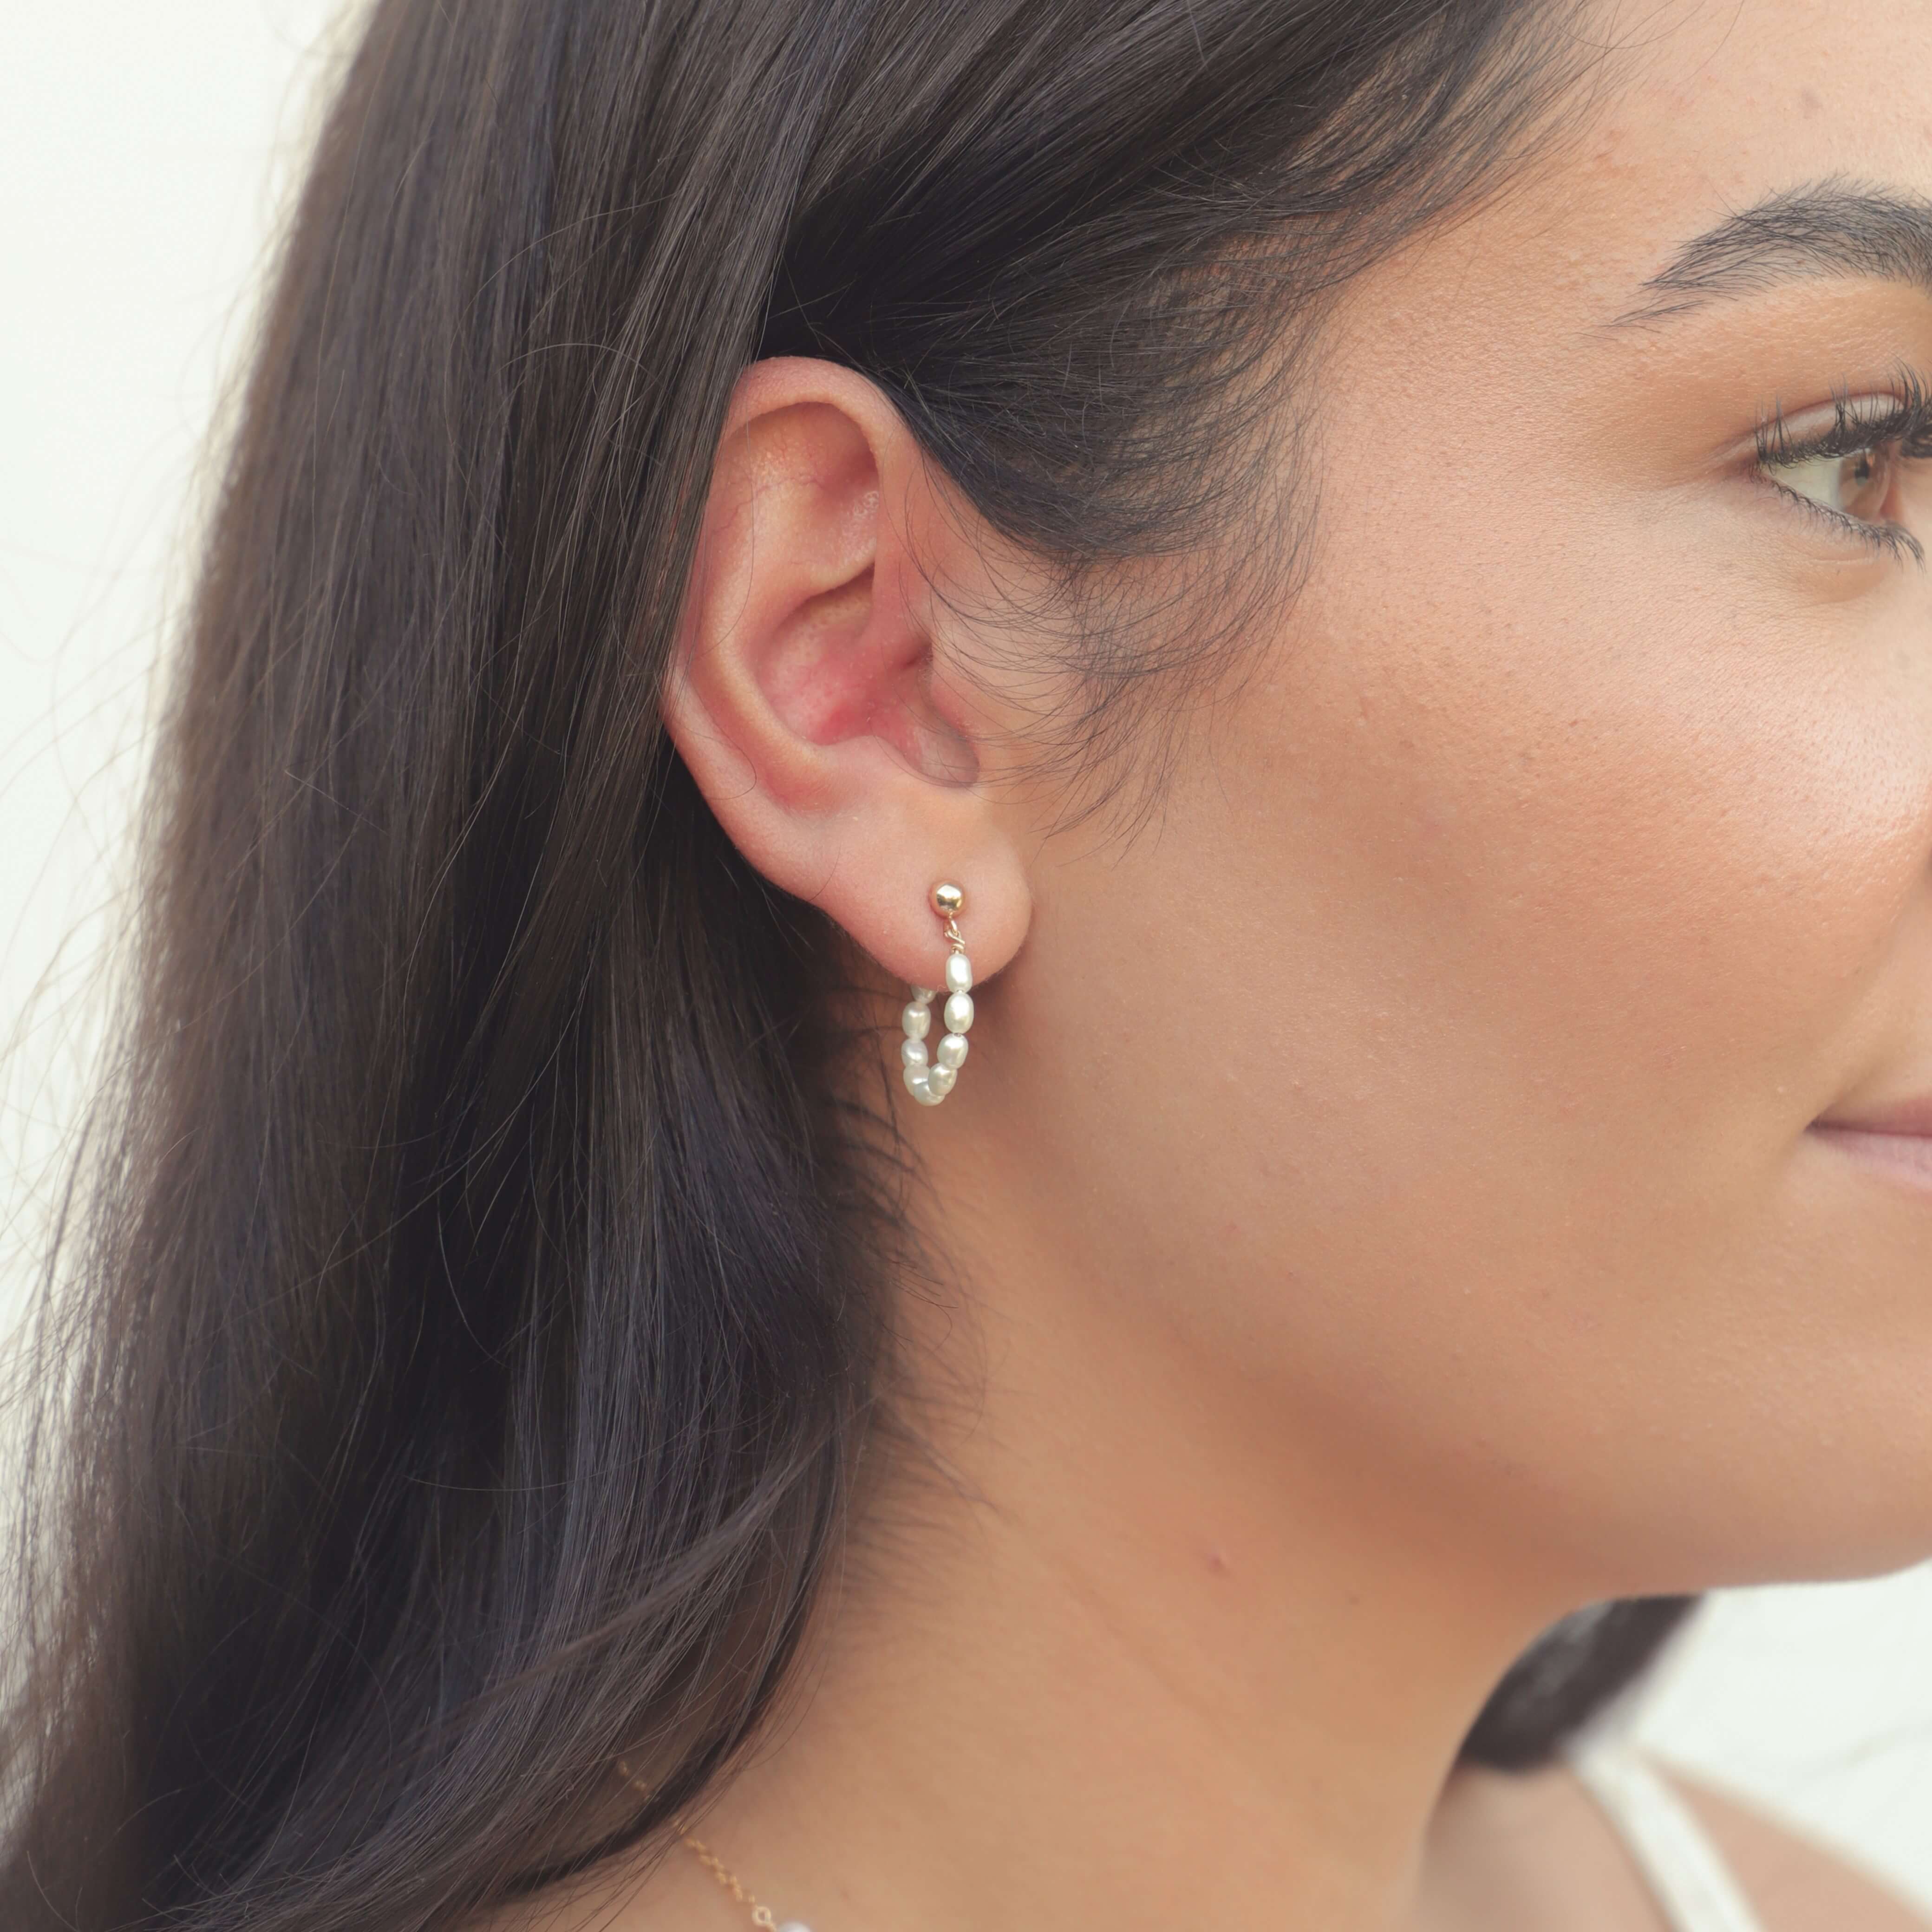 model with dark hair wearing seed pearl hoop earrings in gold filled